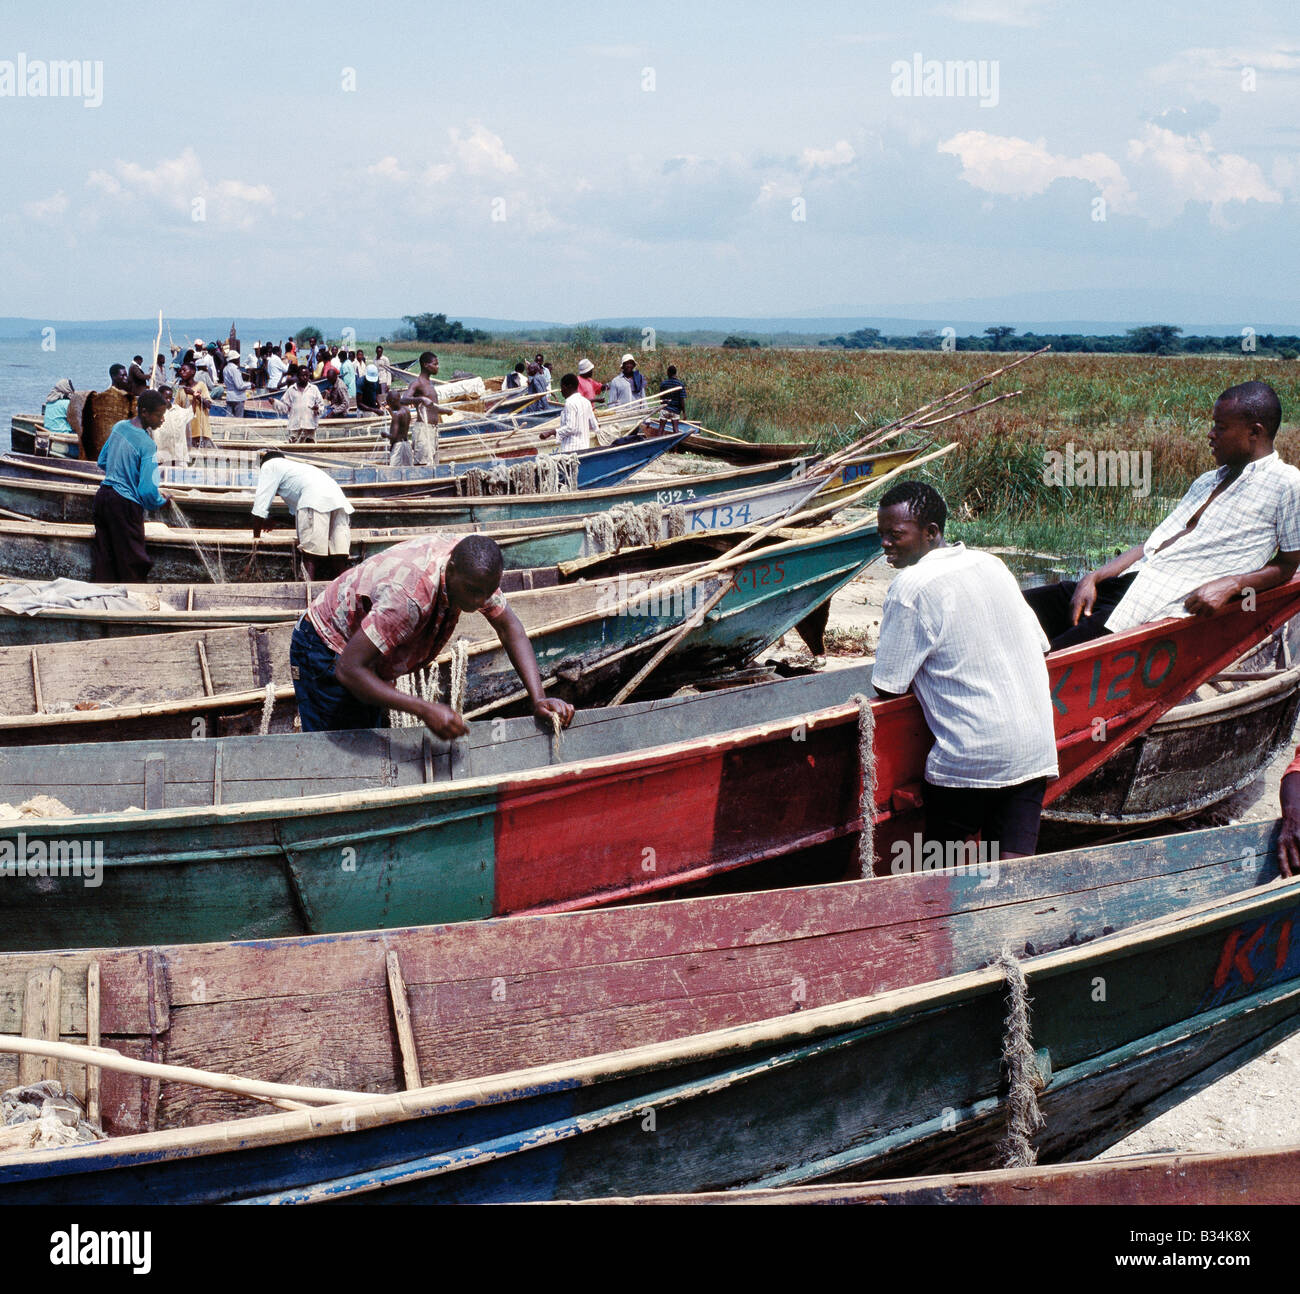 Uganda, Lake Edward, Rwenshama. Wooden fishing boats line the